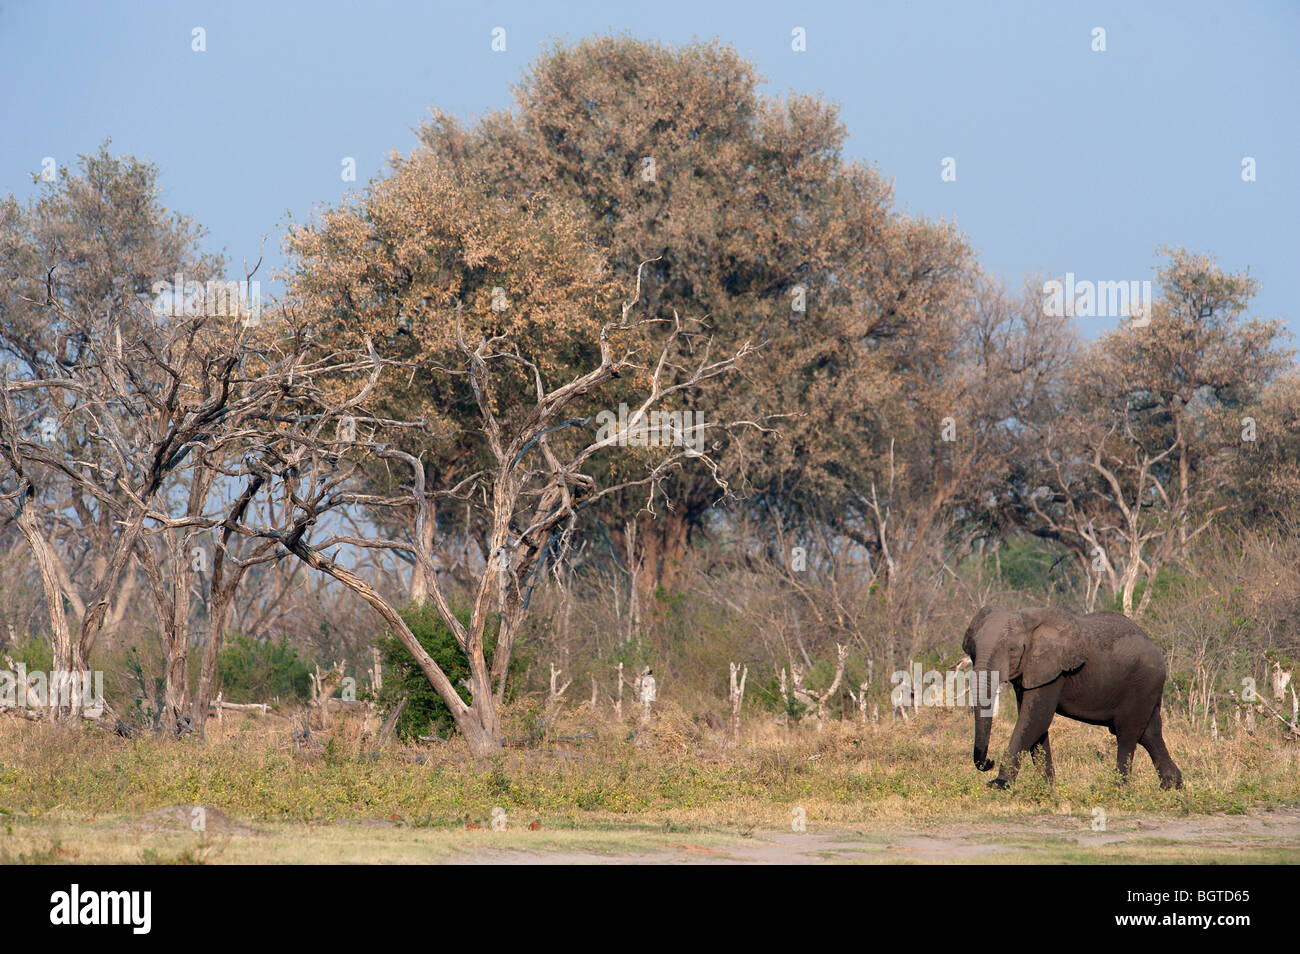 Los elefantes pastando en las orillas del río Kwai, Kwai, Botswana Foto de stock